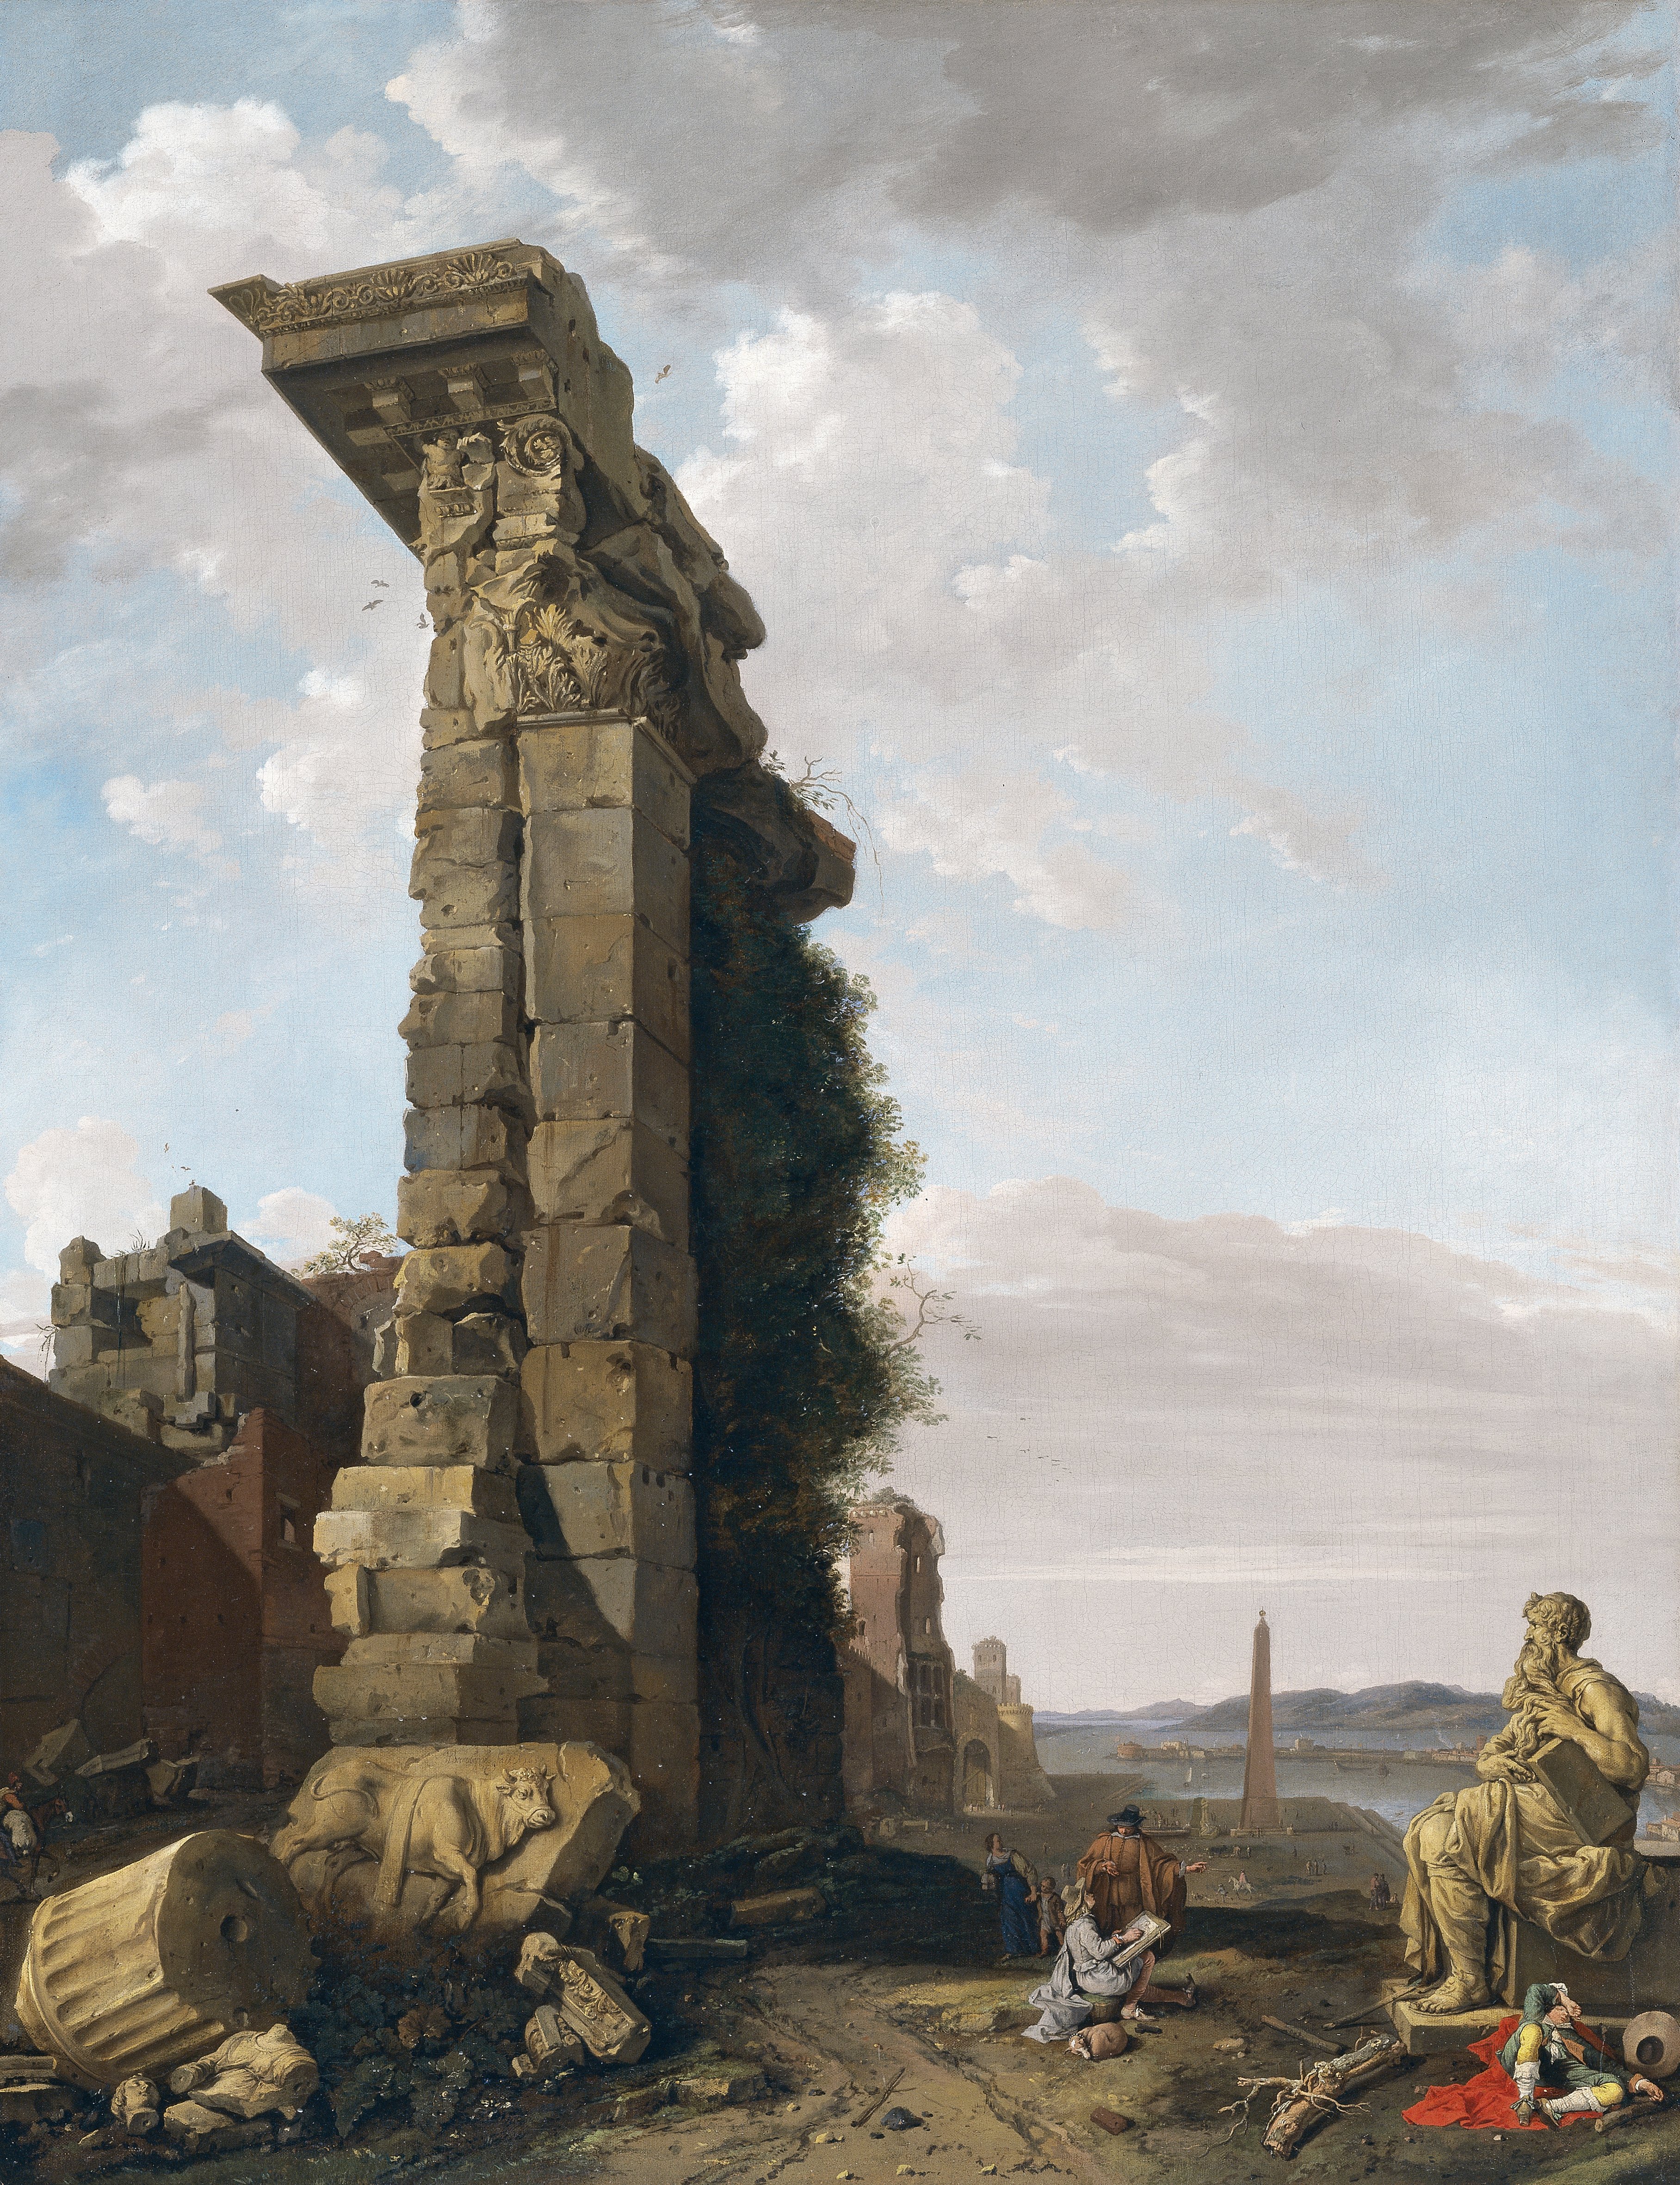 Vista idealizada con ruinas romanas esculturas y un puerto. Bartholomeus Breenbergh